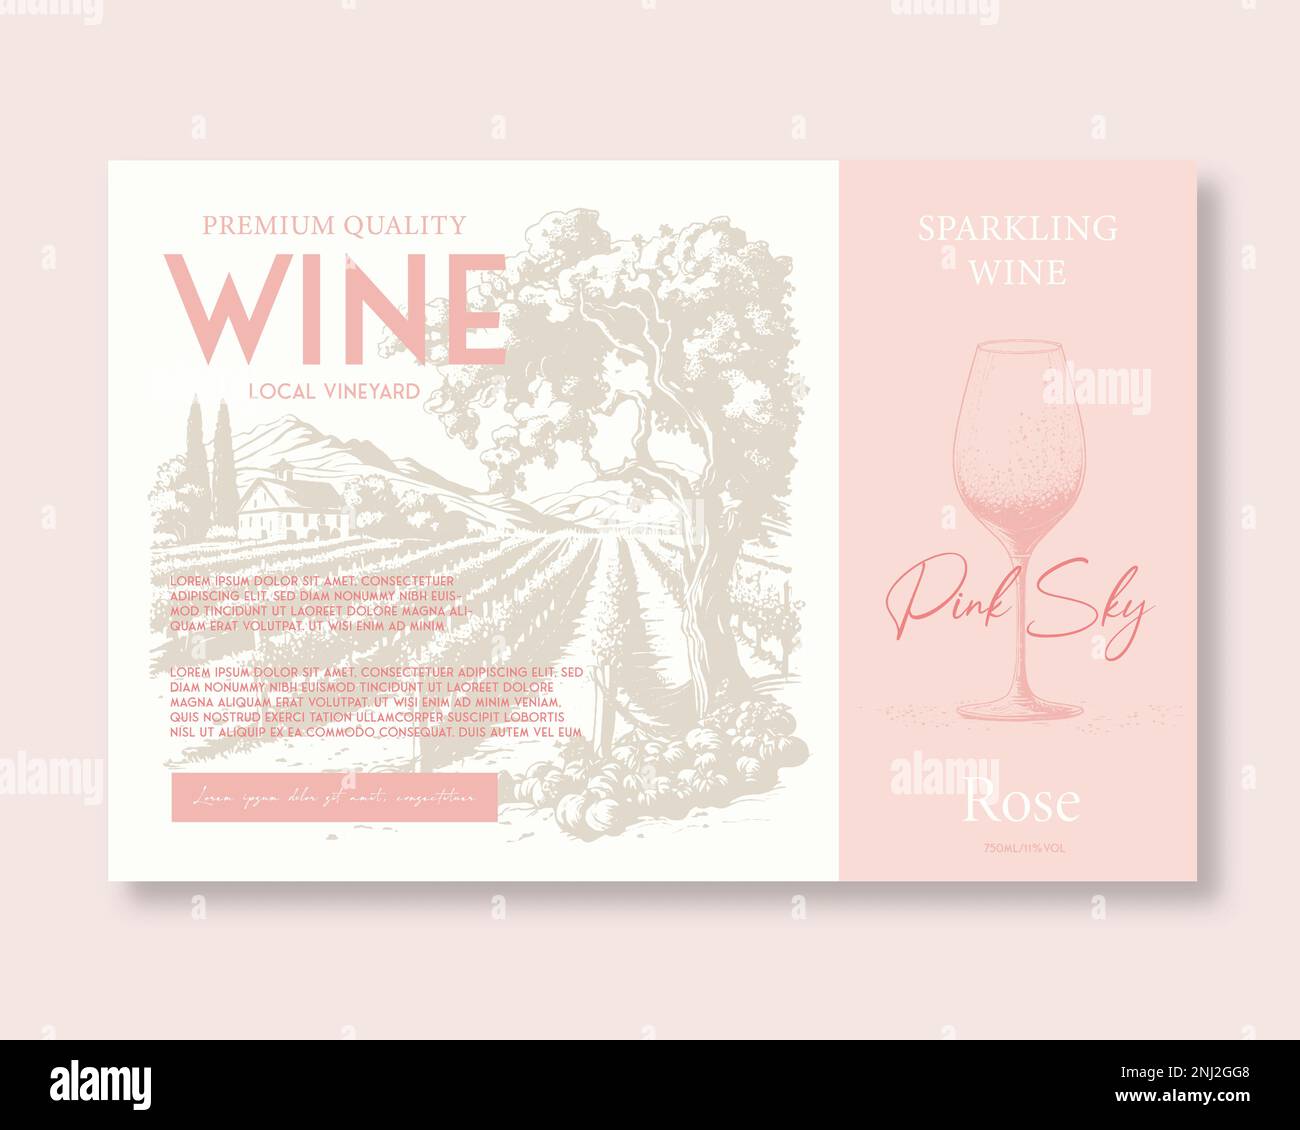 Etichetta del vino rosa di qualità Premium disegno a mano di vigneto rurale schizzi di paesaggio con la tipografia vintage. Illustrazione Vettoriale